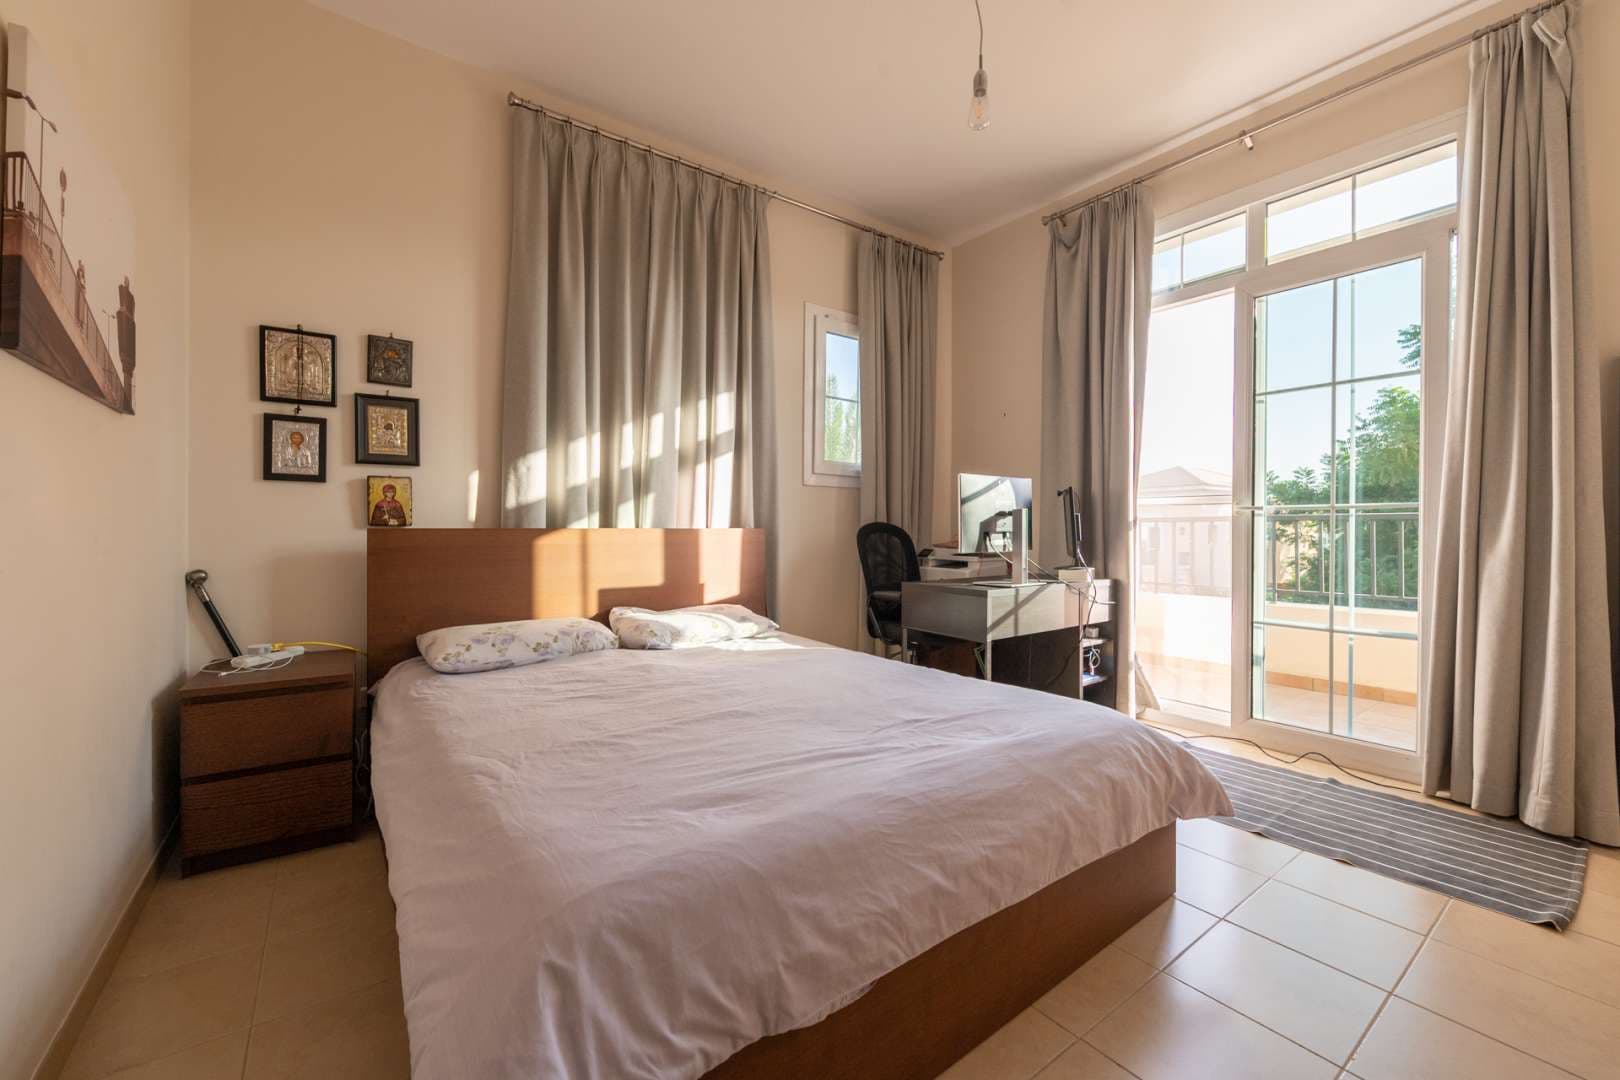 3 Bedroom Villa For Rent Al Reem Lp05269 1a66bea3ec8f8d00.jpg